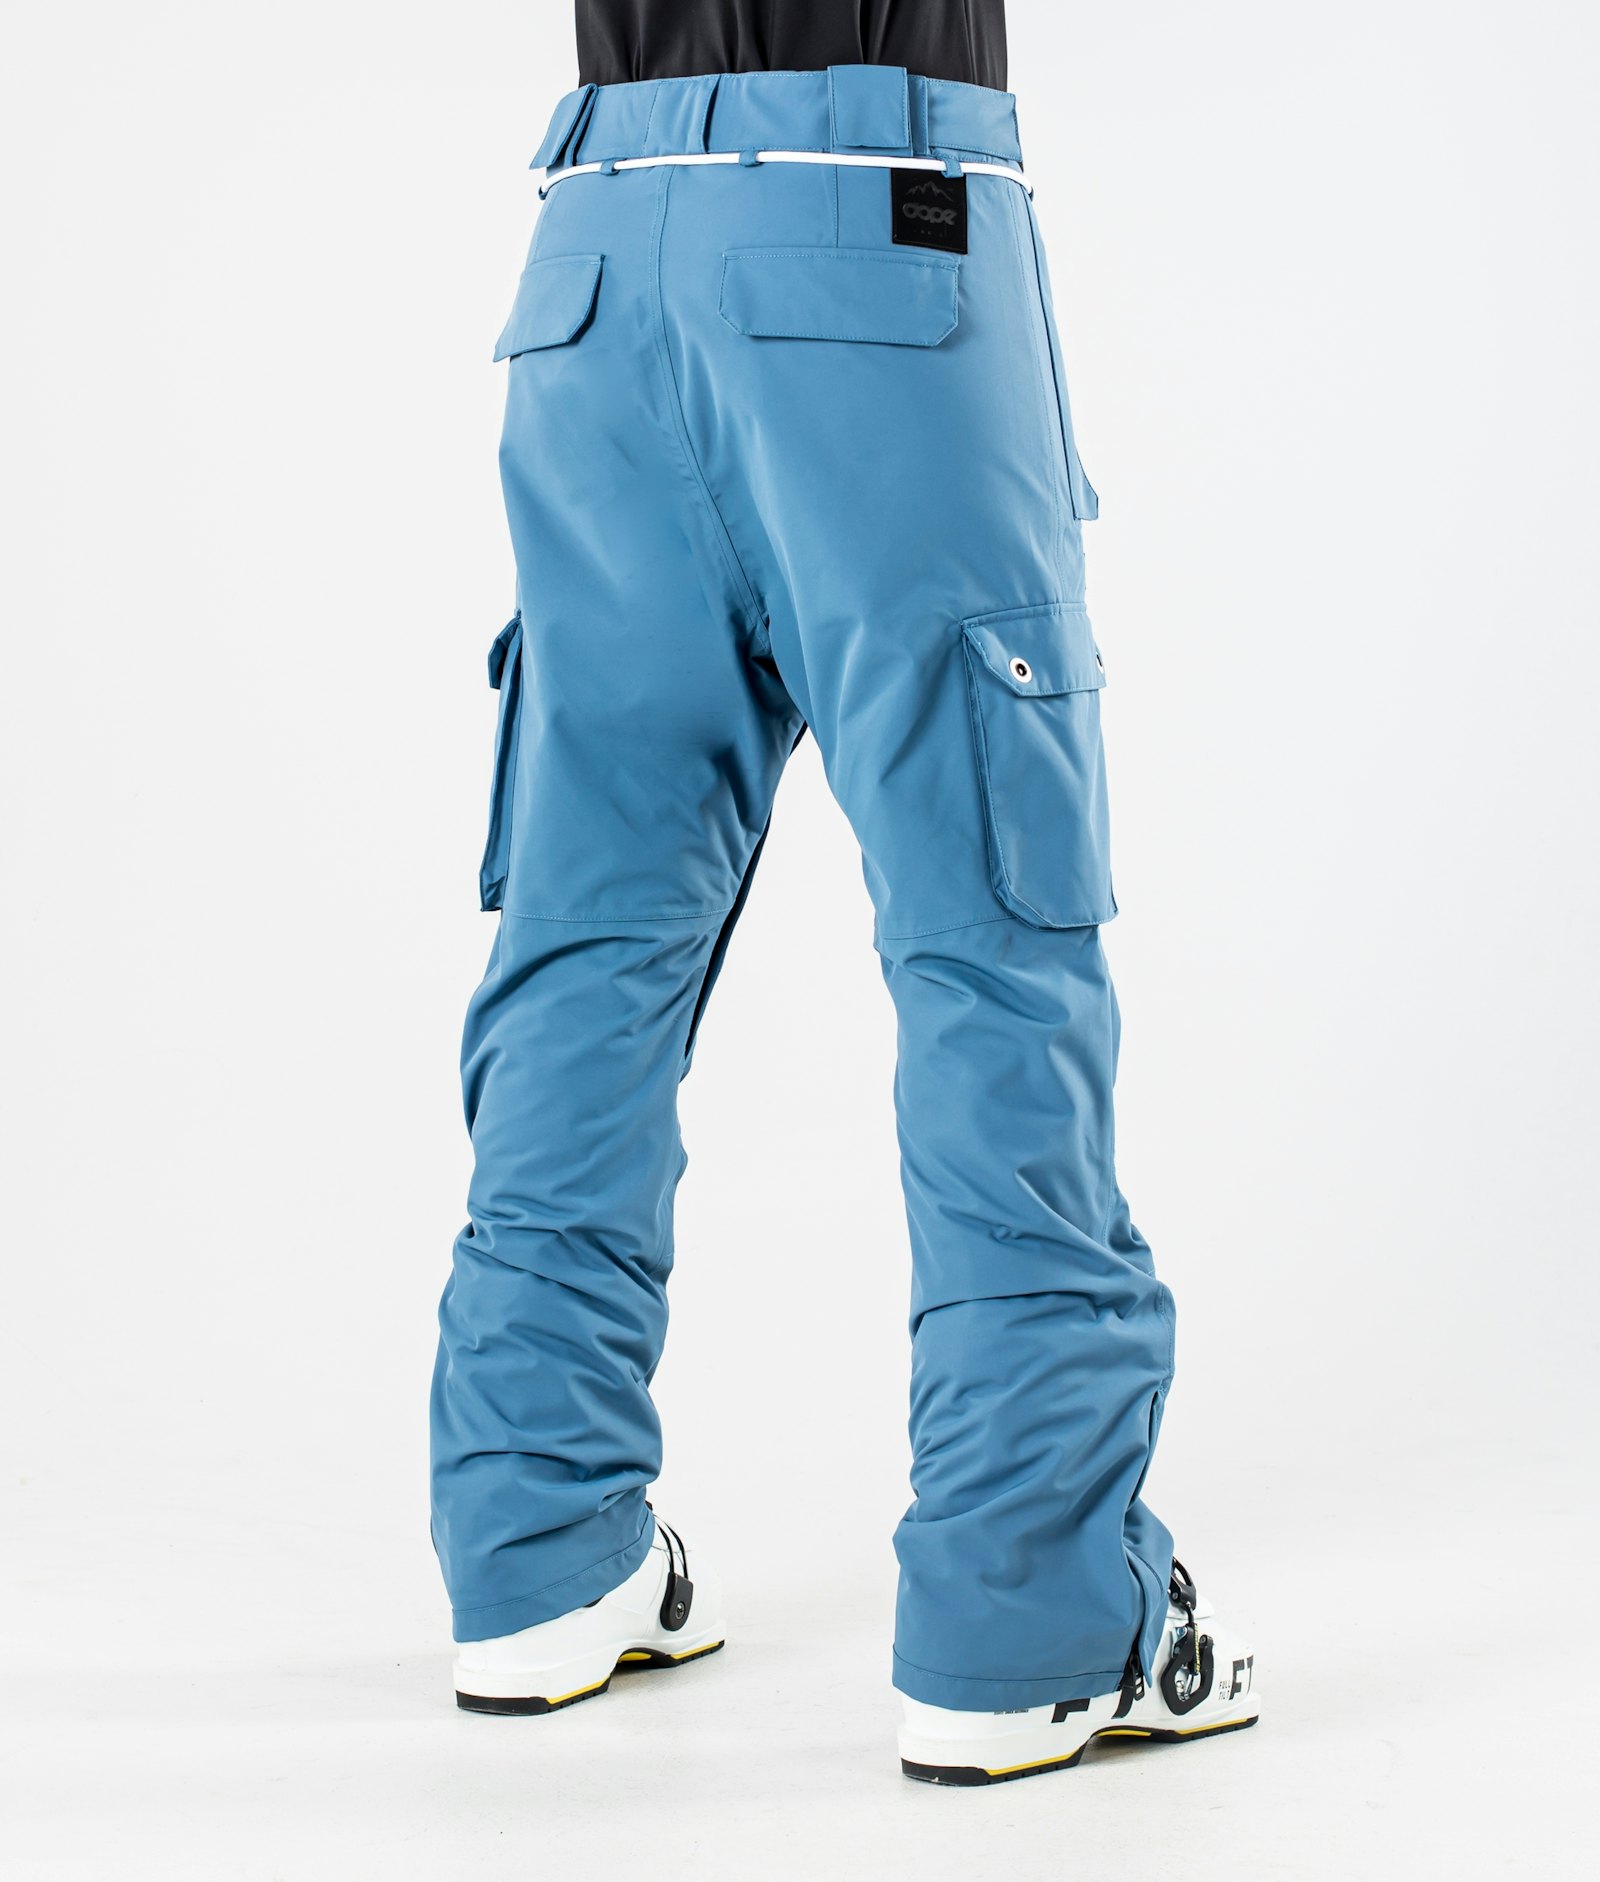 Dope Iconic W 2020 Ski Pants Women Blue Steel